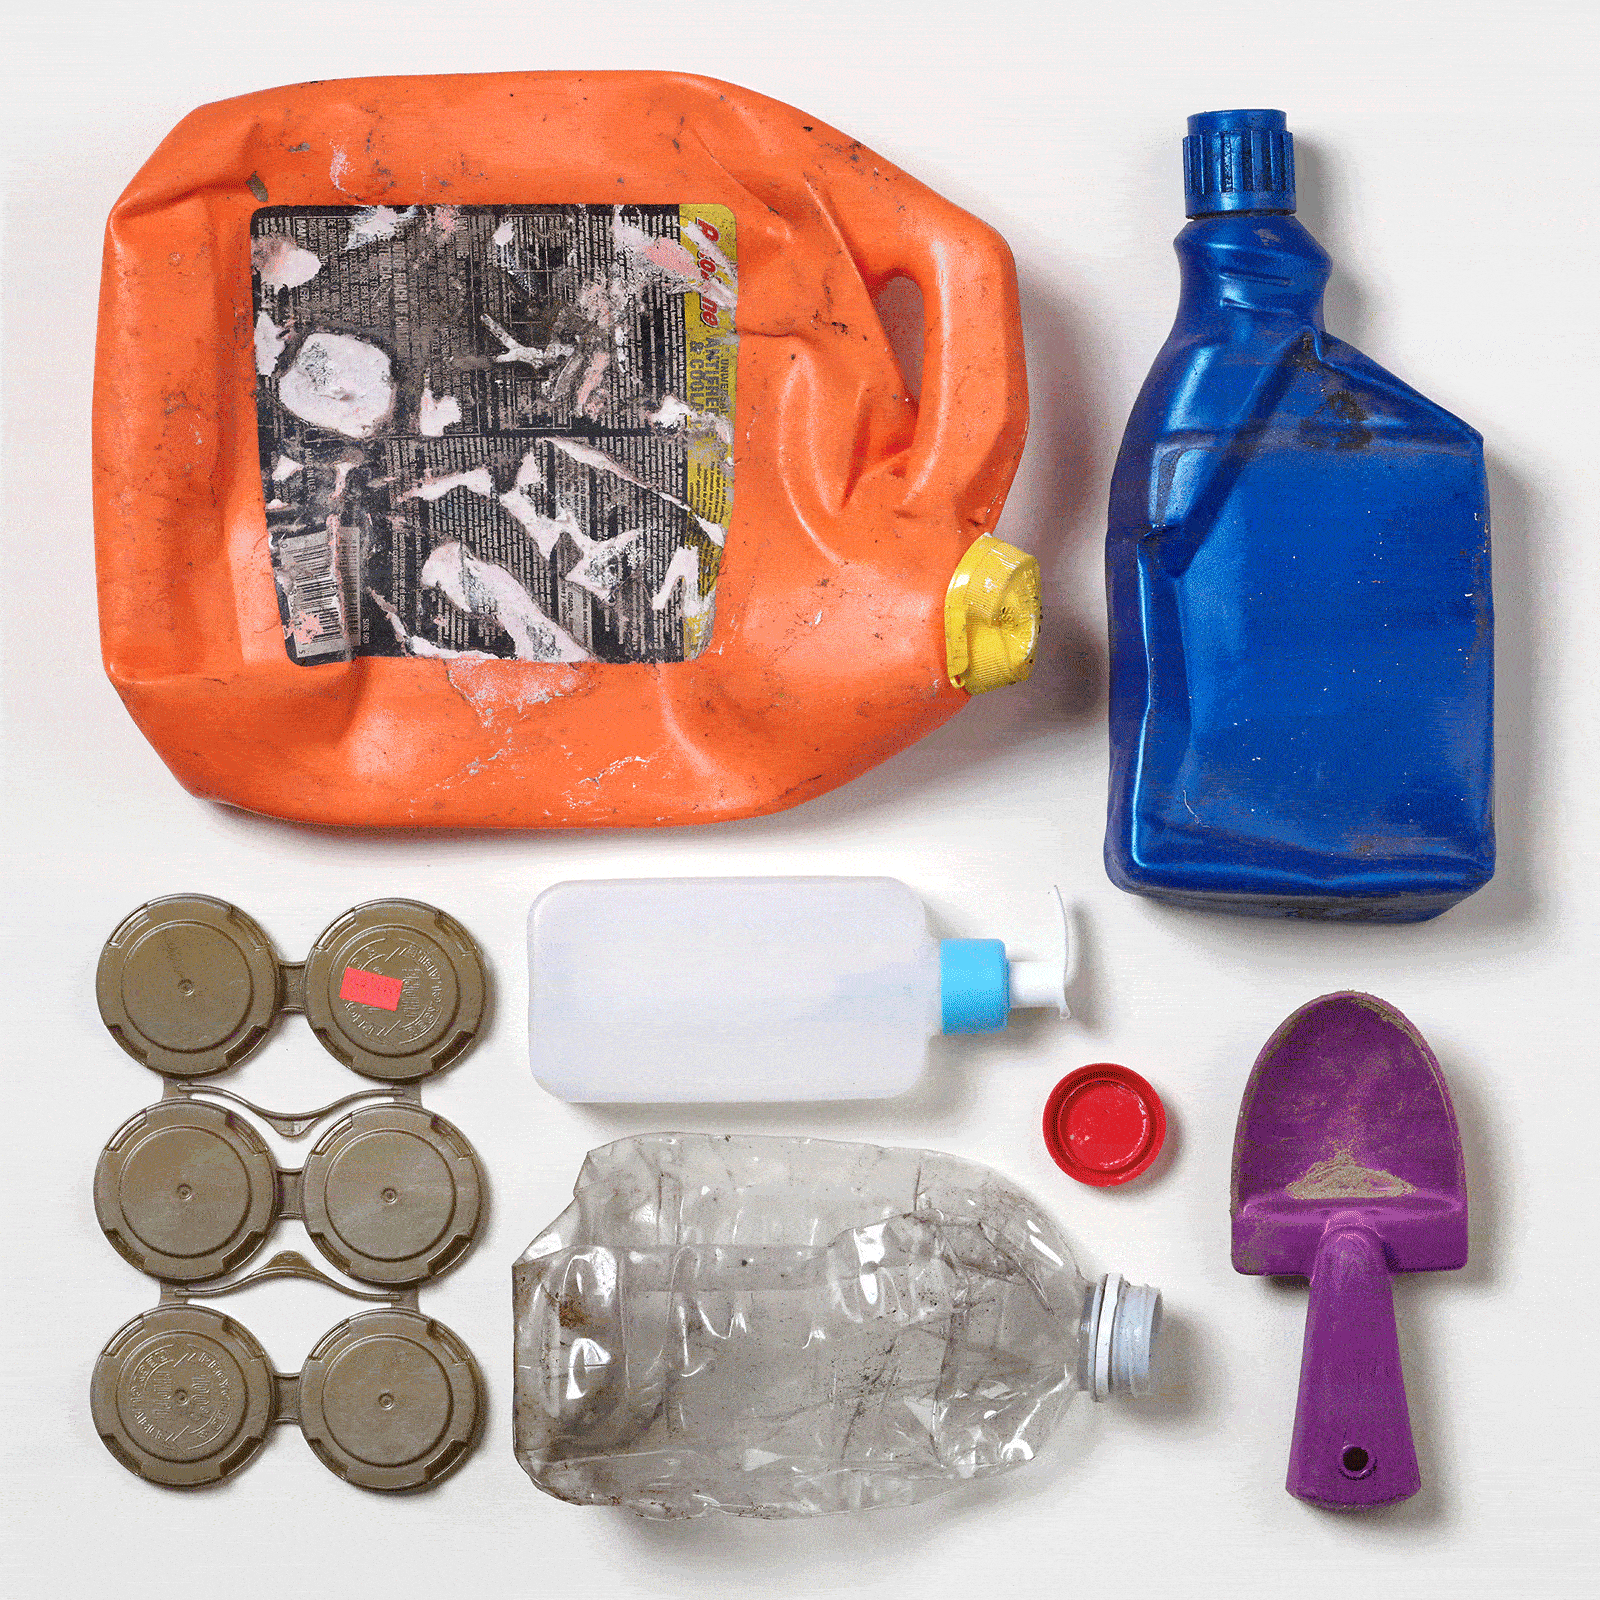 Siete piezas de residuos plásticos coloridos y recuperados del océano dispuestos en un patrón cuadrado sobre un fondo blanco.